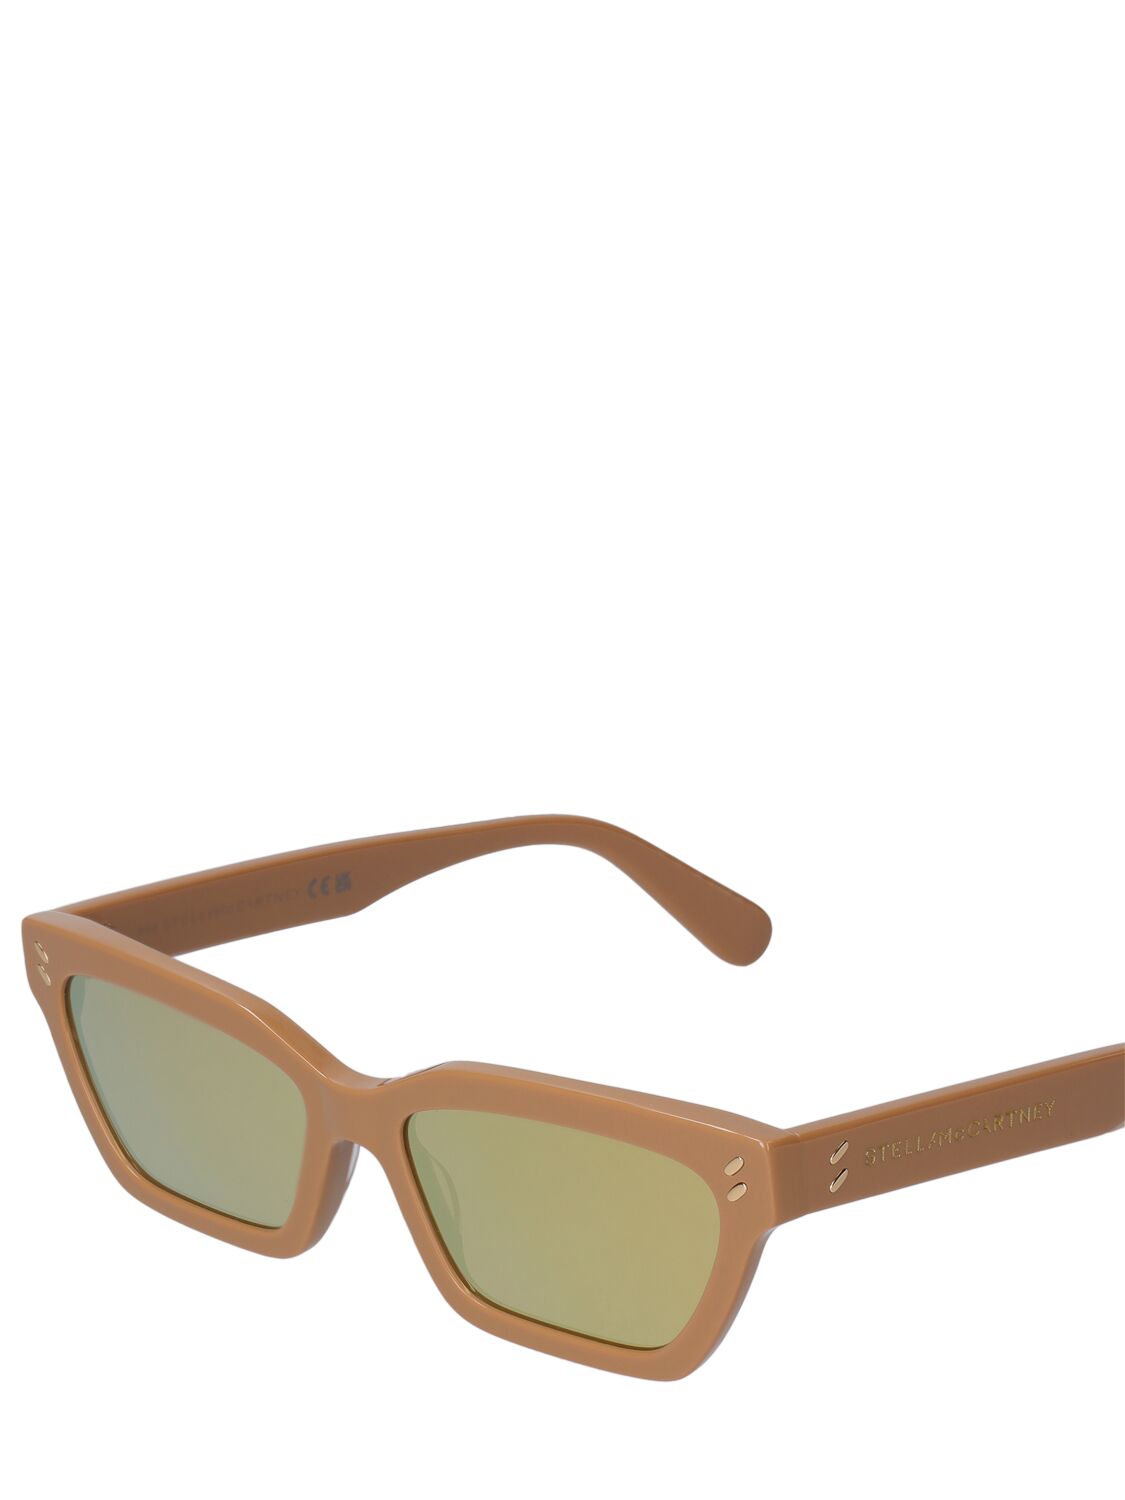 Shop Stella Mccartney Squared Acetate Sunglasses In Beige,brown